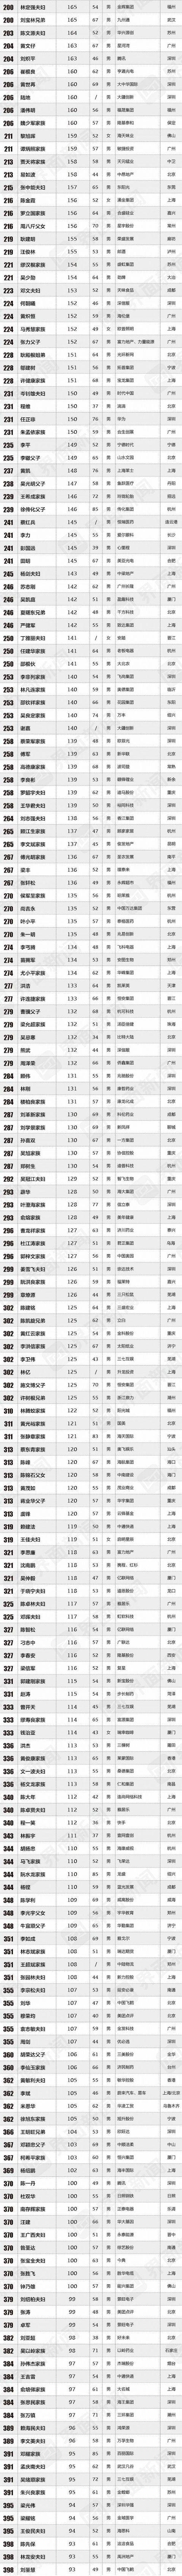 2020中国最富的人前_2020中国最富1000人榜上榜总财富增28%